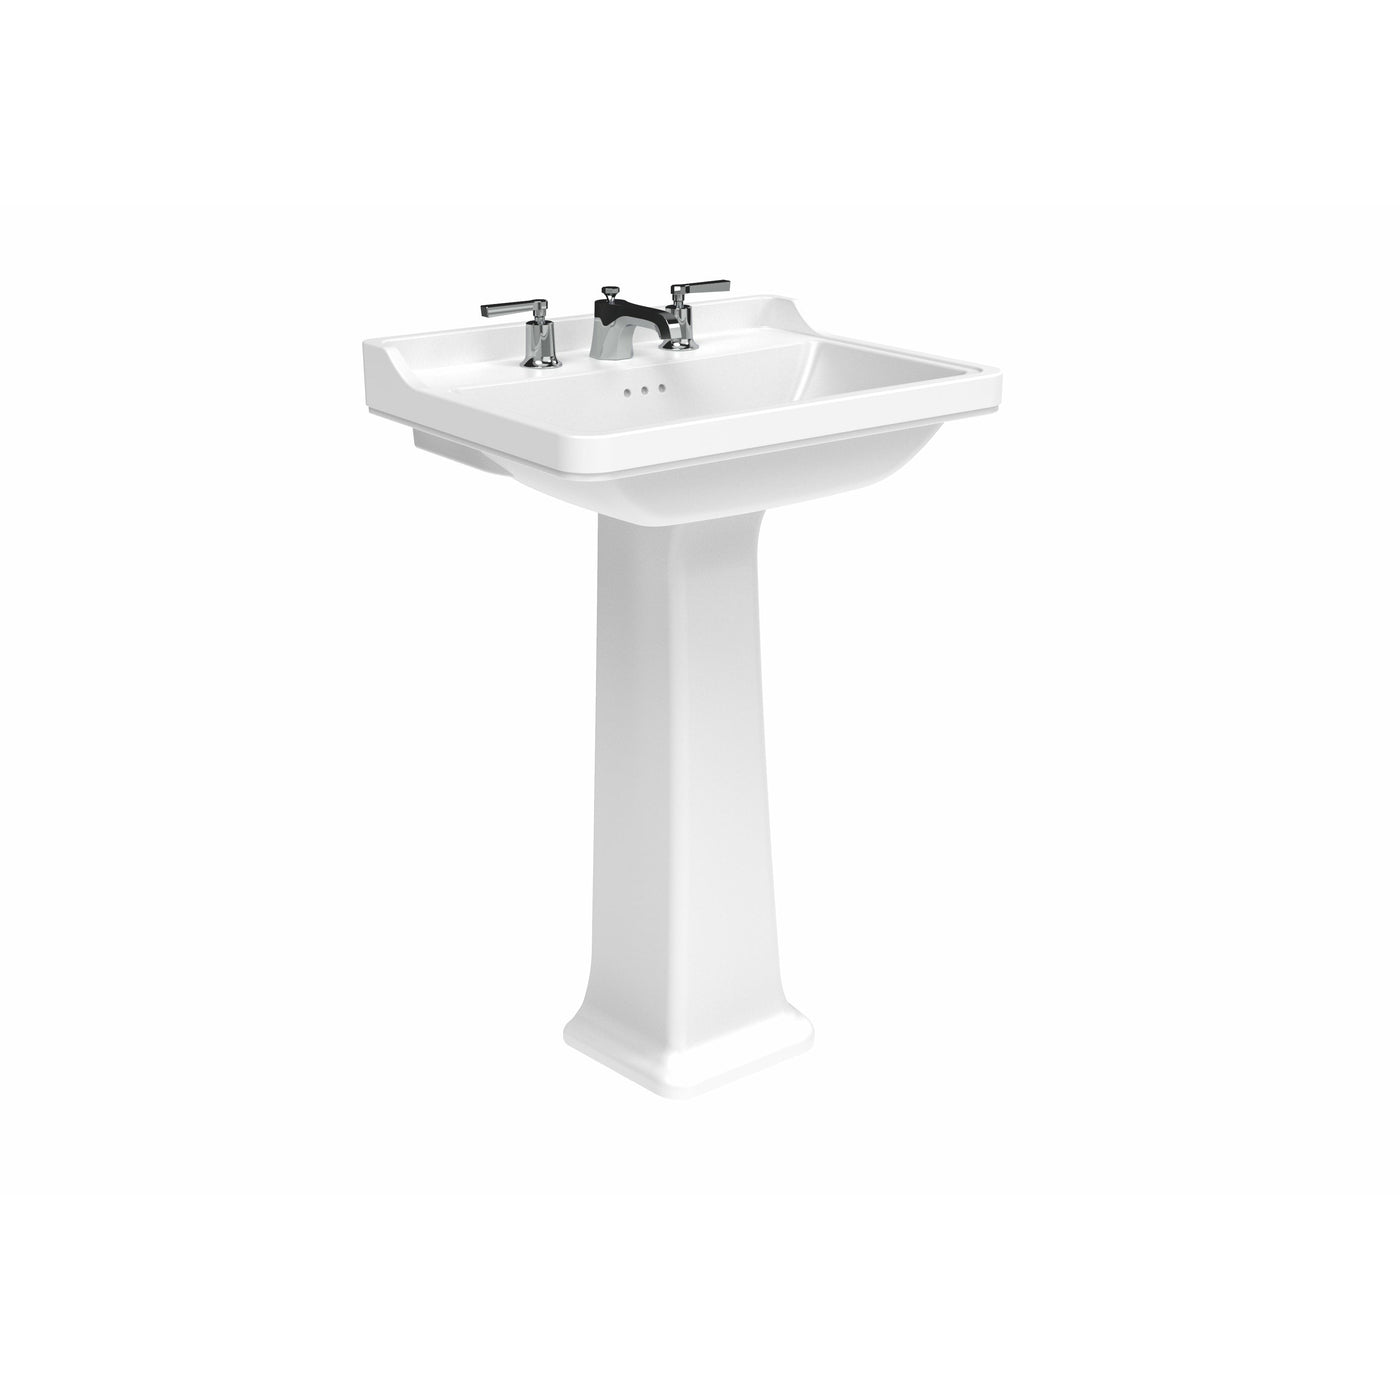 SOFIA 40x35cm washbasin with full pedestal - Letta London - 